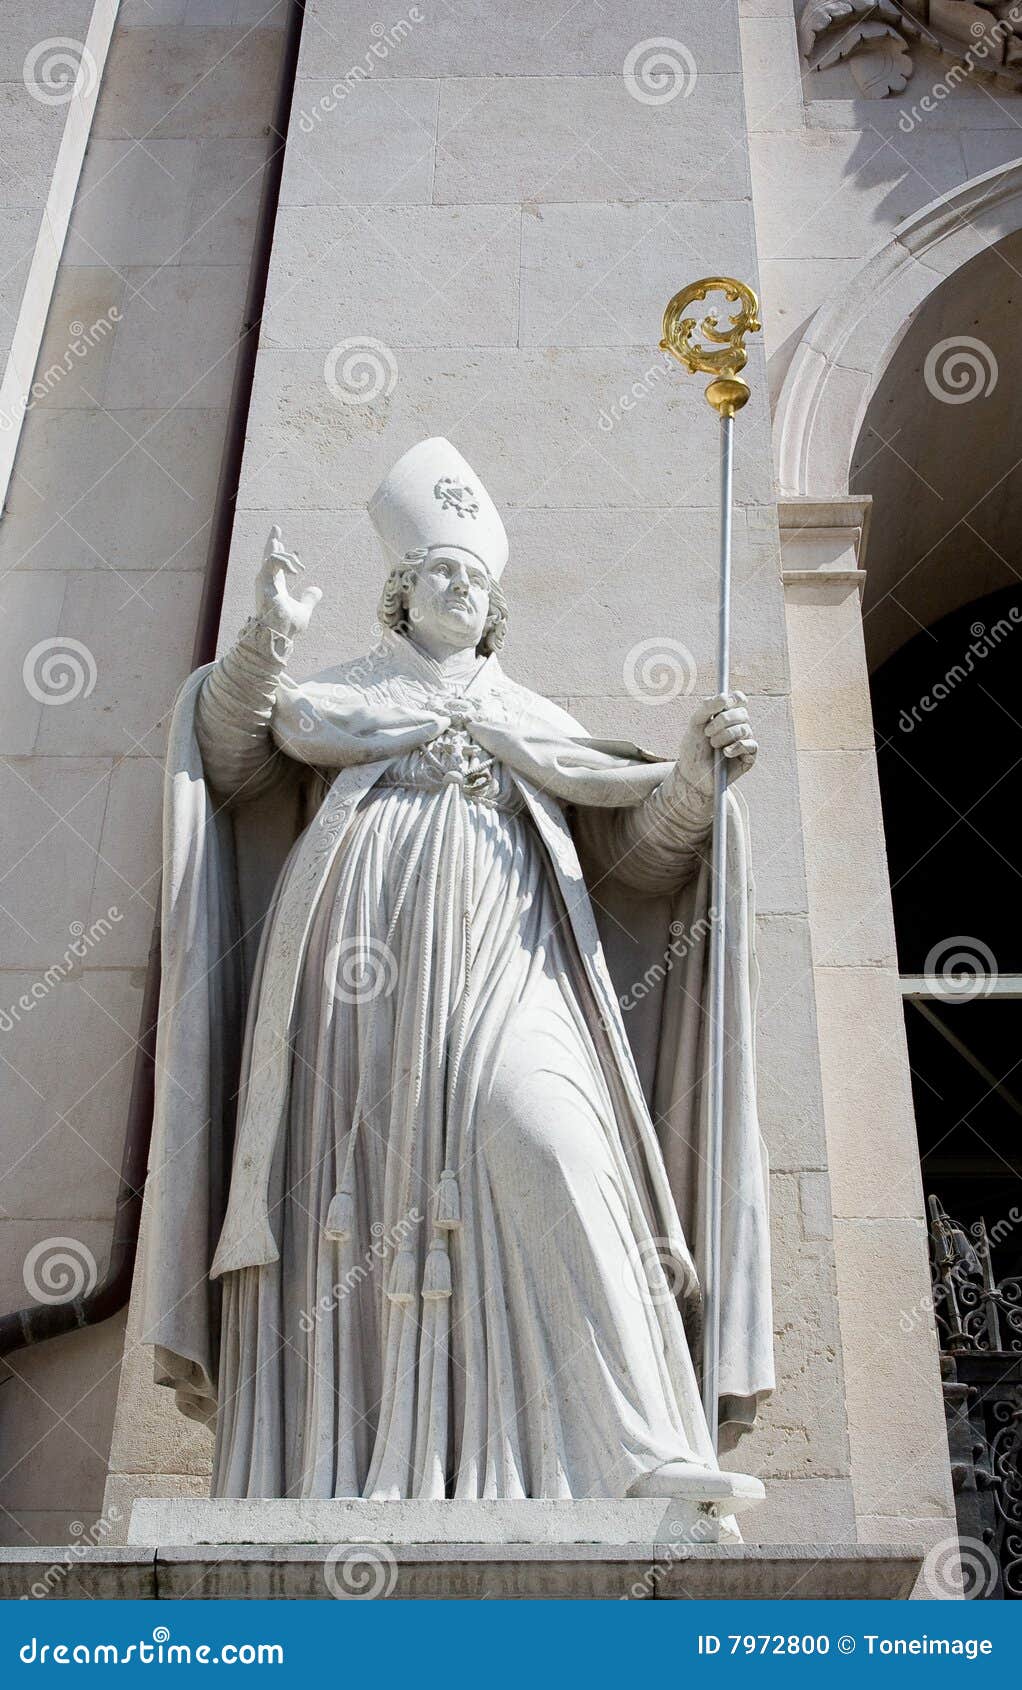 bishop statue